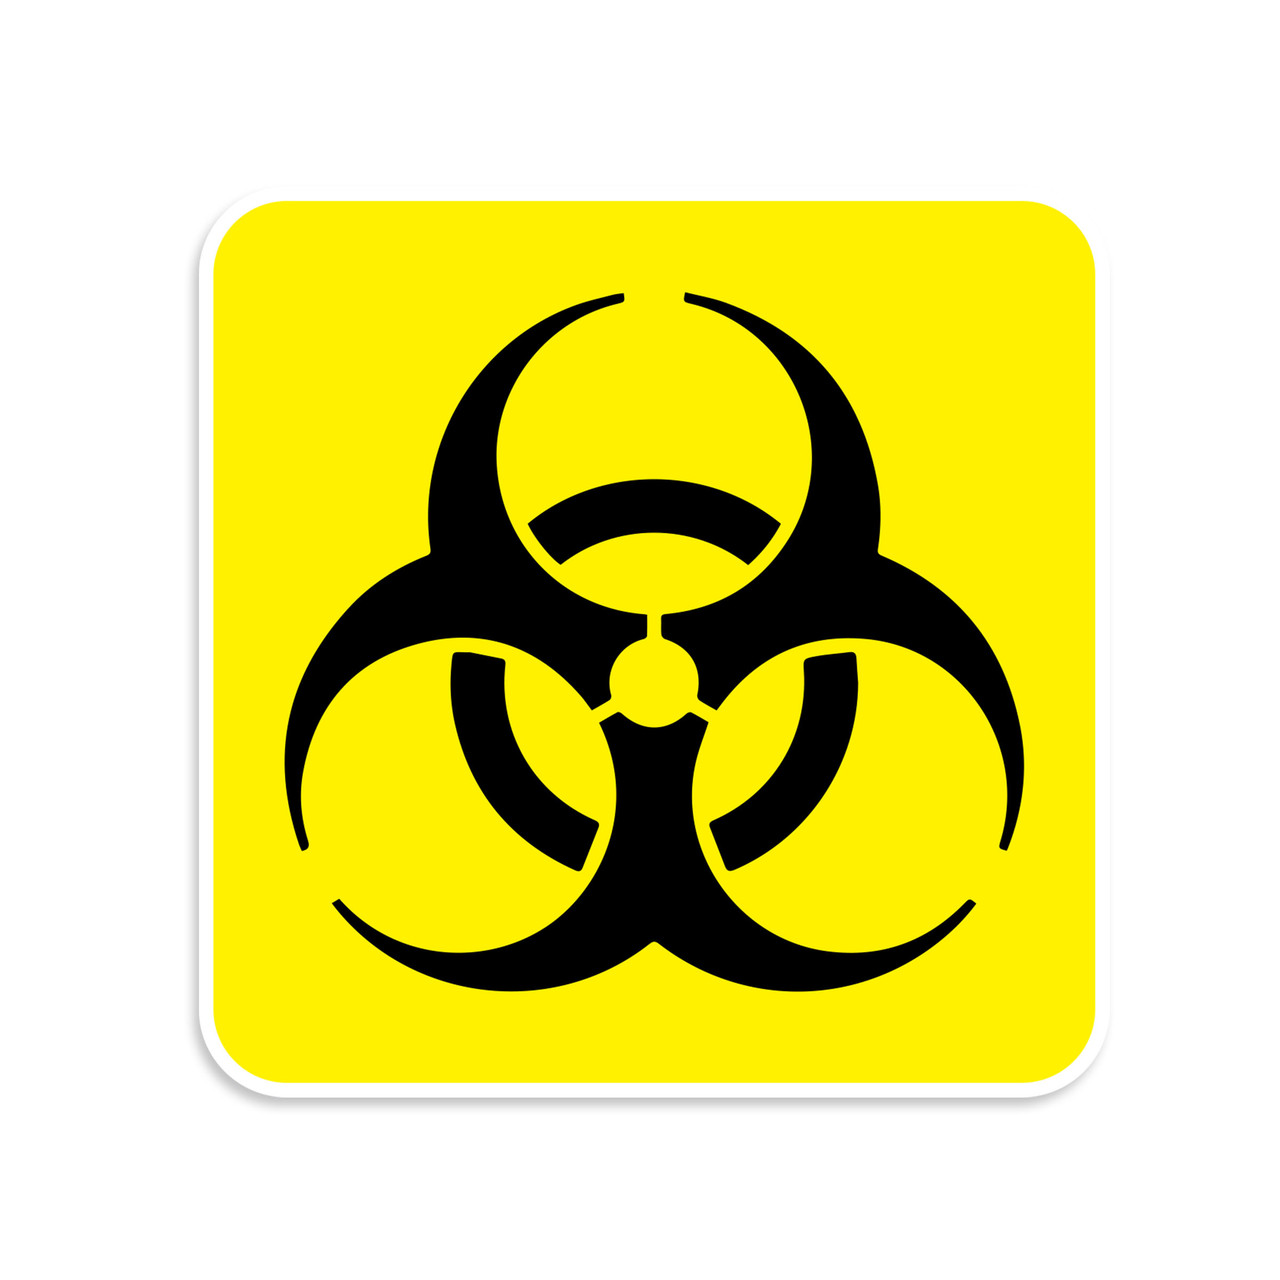 Bio-hazard Sticker - Splatter Bio Hazard Symbol Decal - Choose